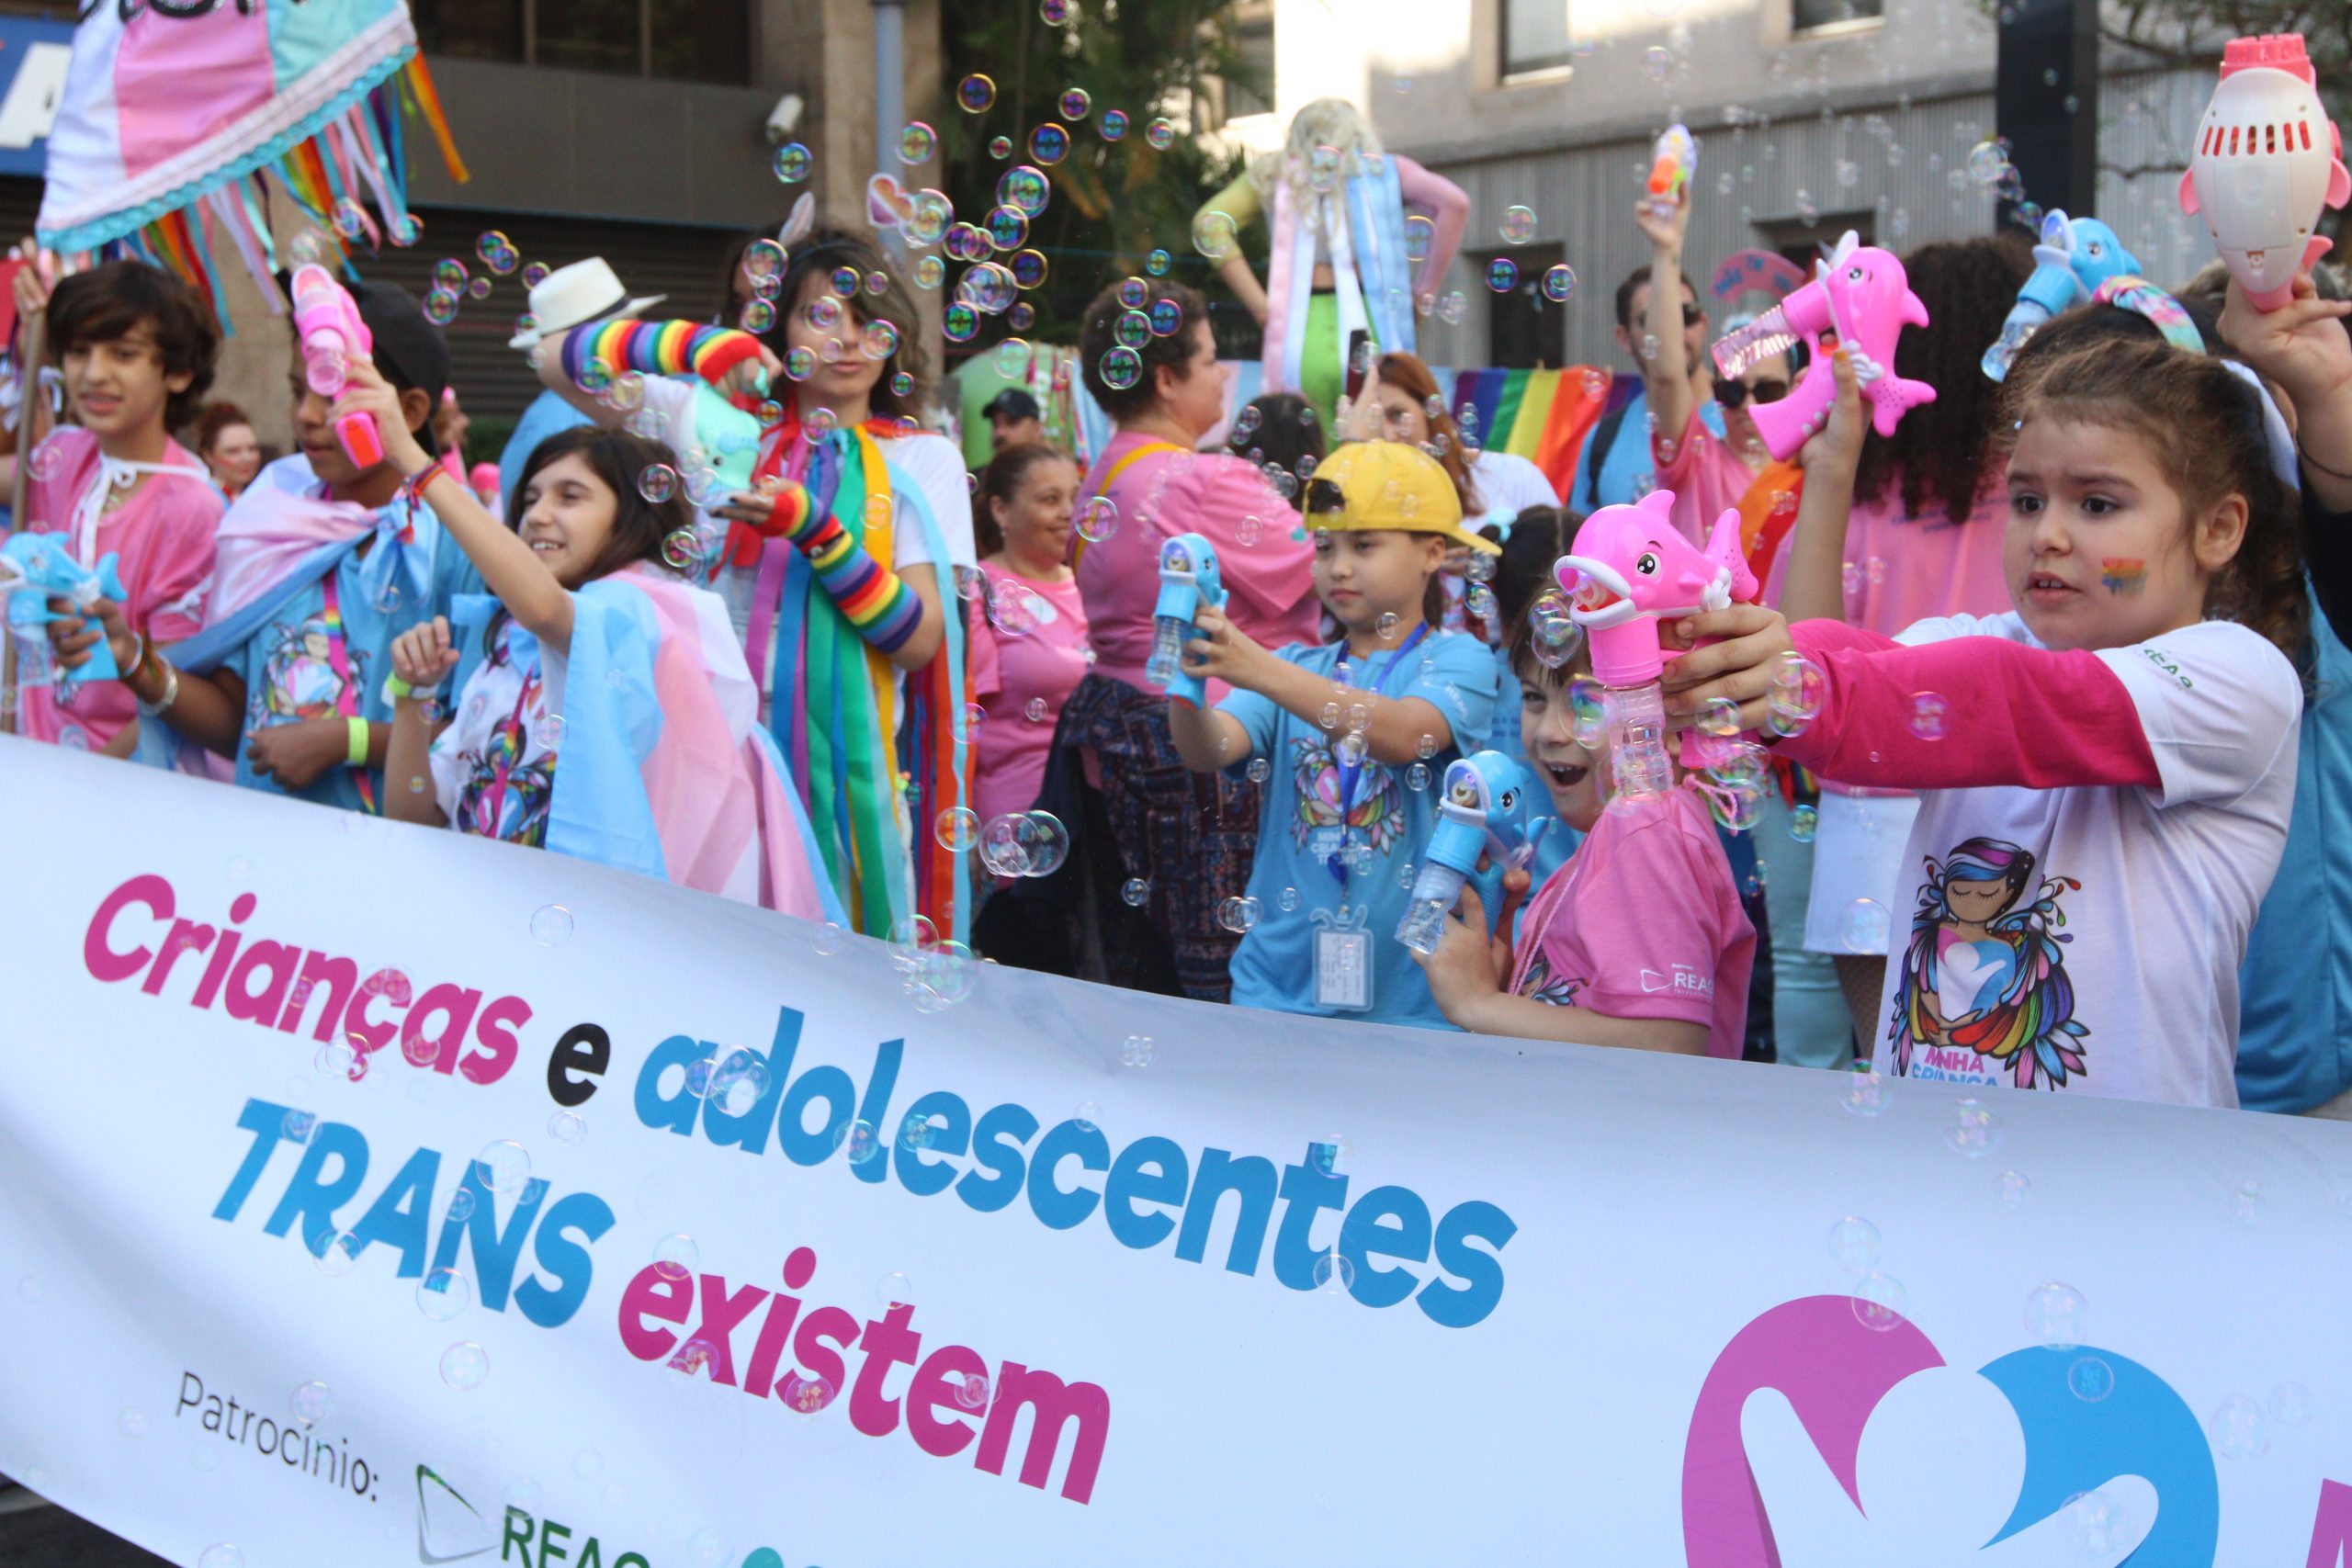 Grupo de crianças, vestidas com roupas coloridas, por trás de uma faixa com a frase "crianças e adolescentes trans existem" em letras azul e rosa